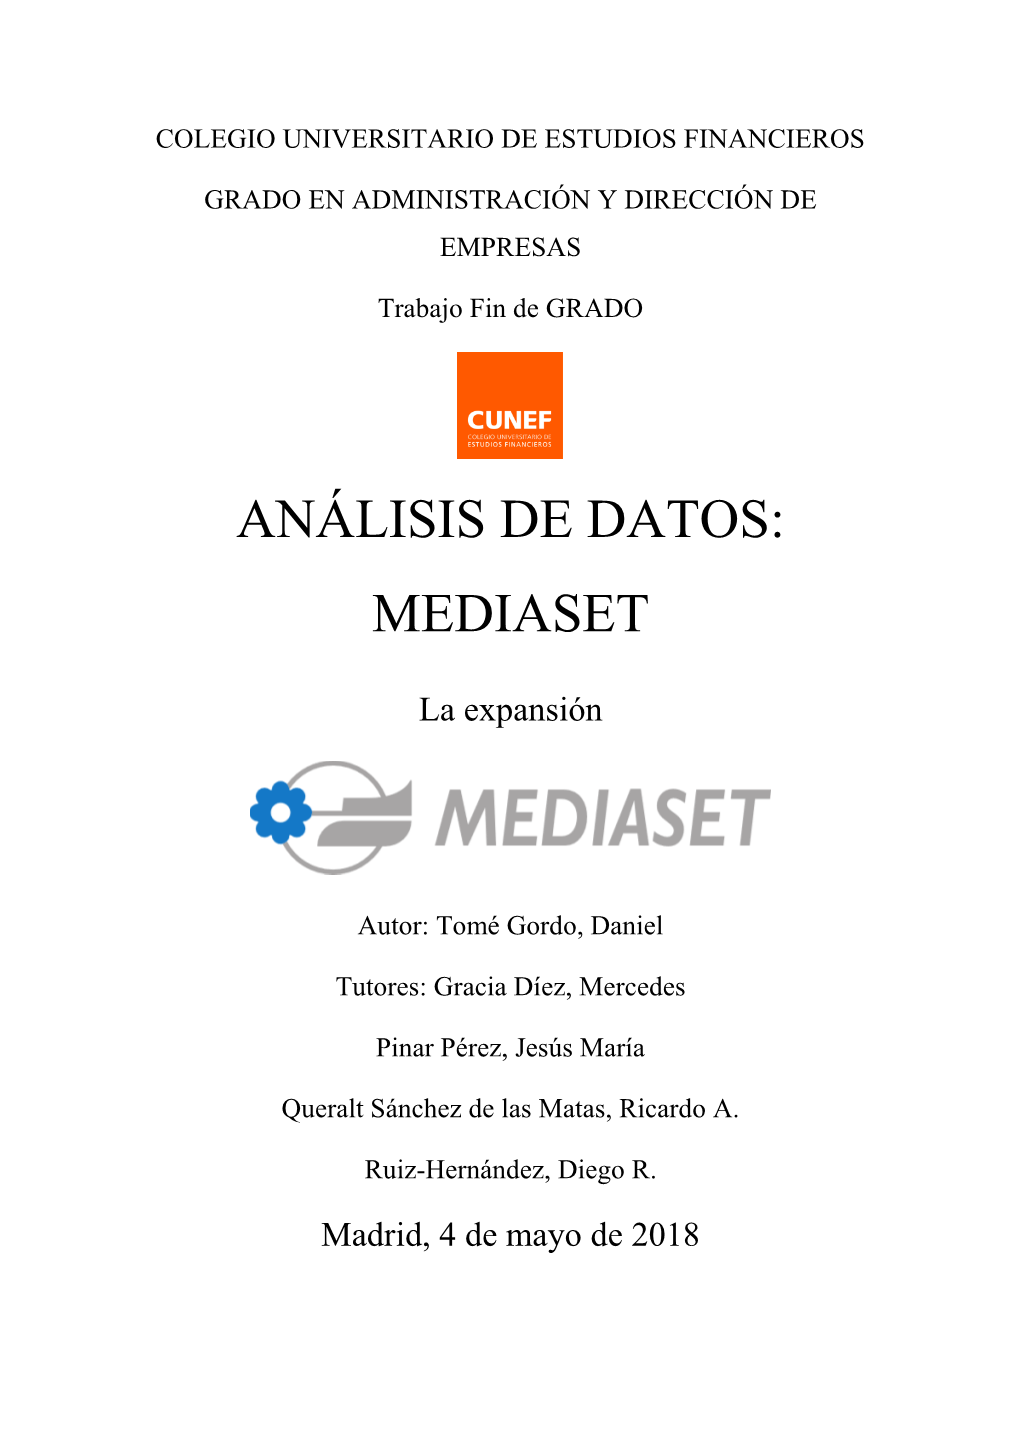 Mediaset, La Expansión